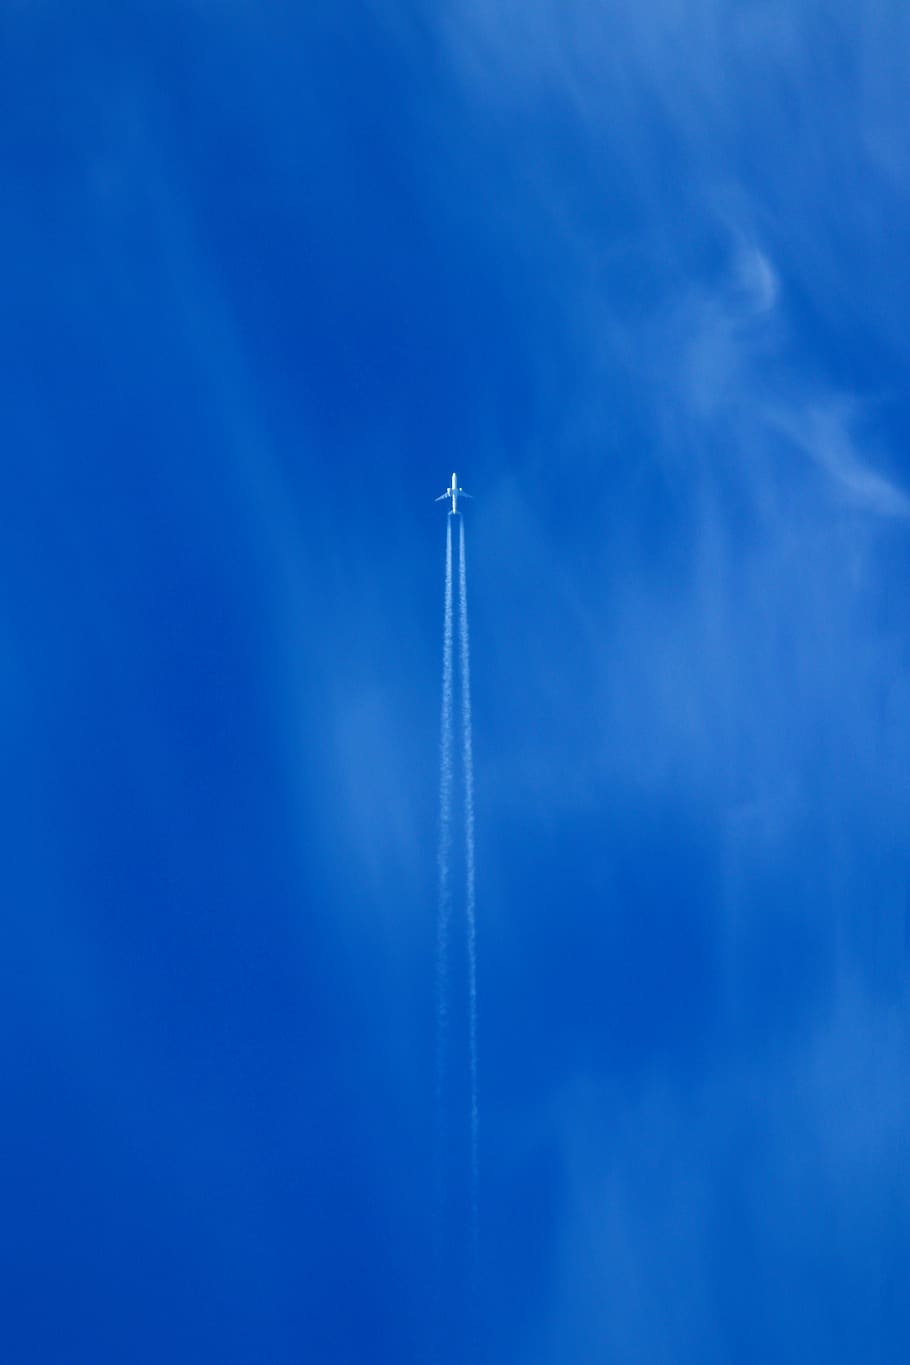 céu azul, motor a jato, jato, avião, aeronaves, céu, militar, viagens, voar, nuvem